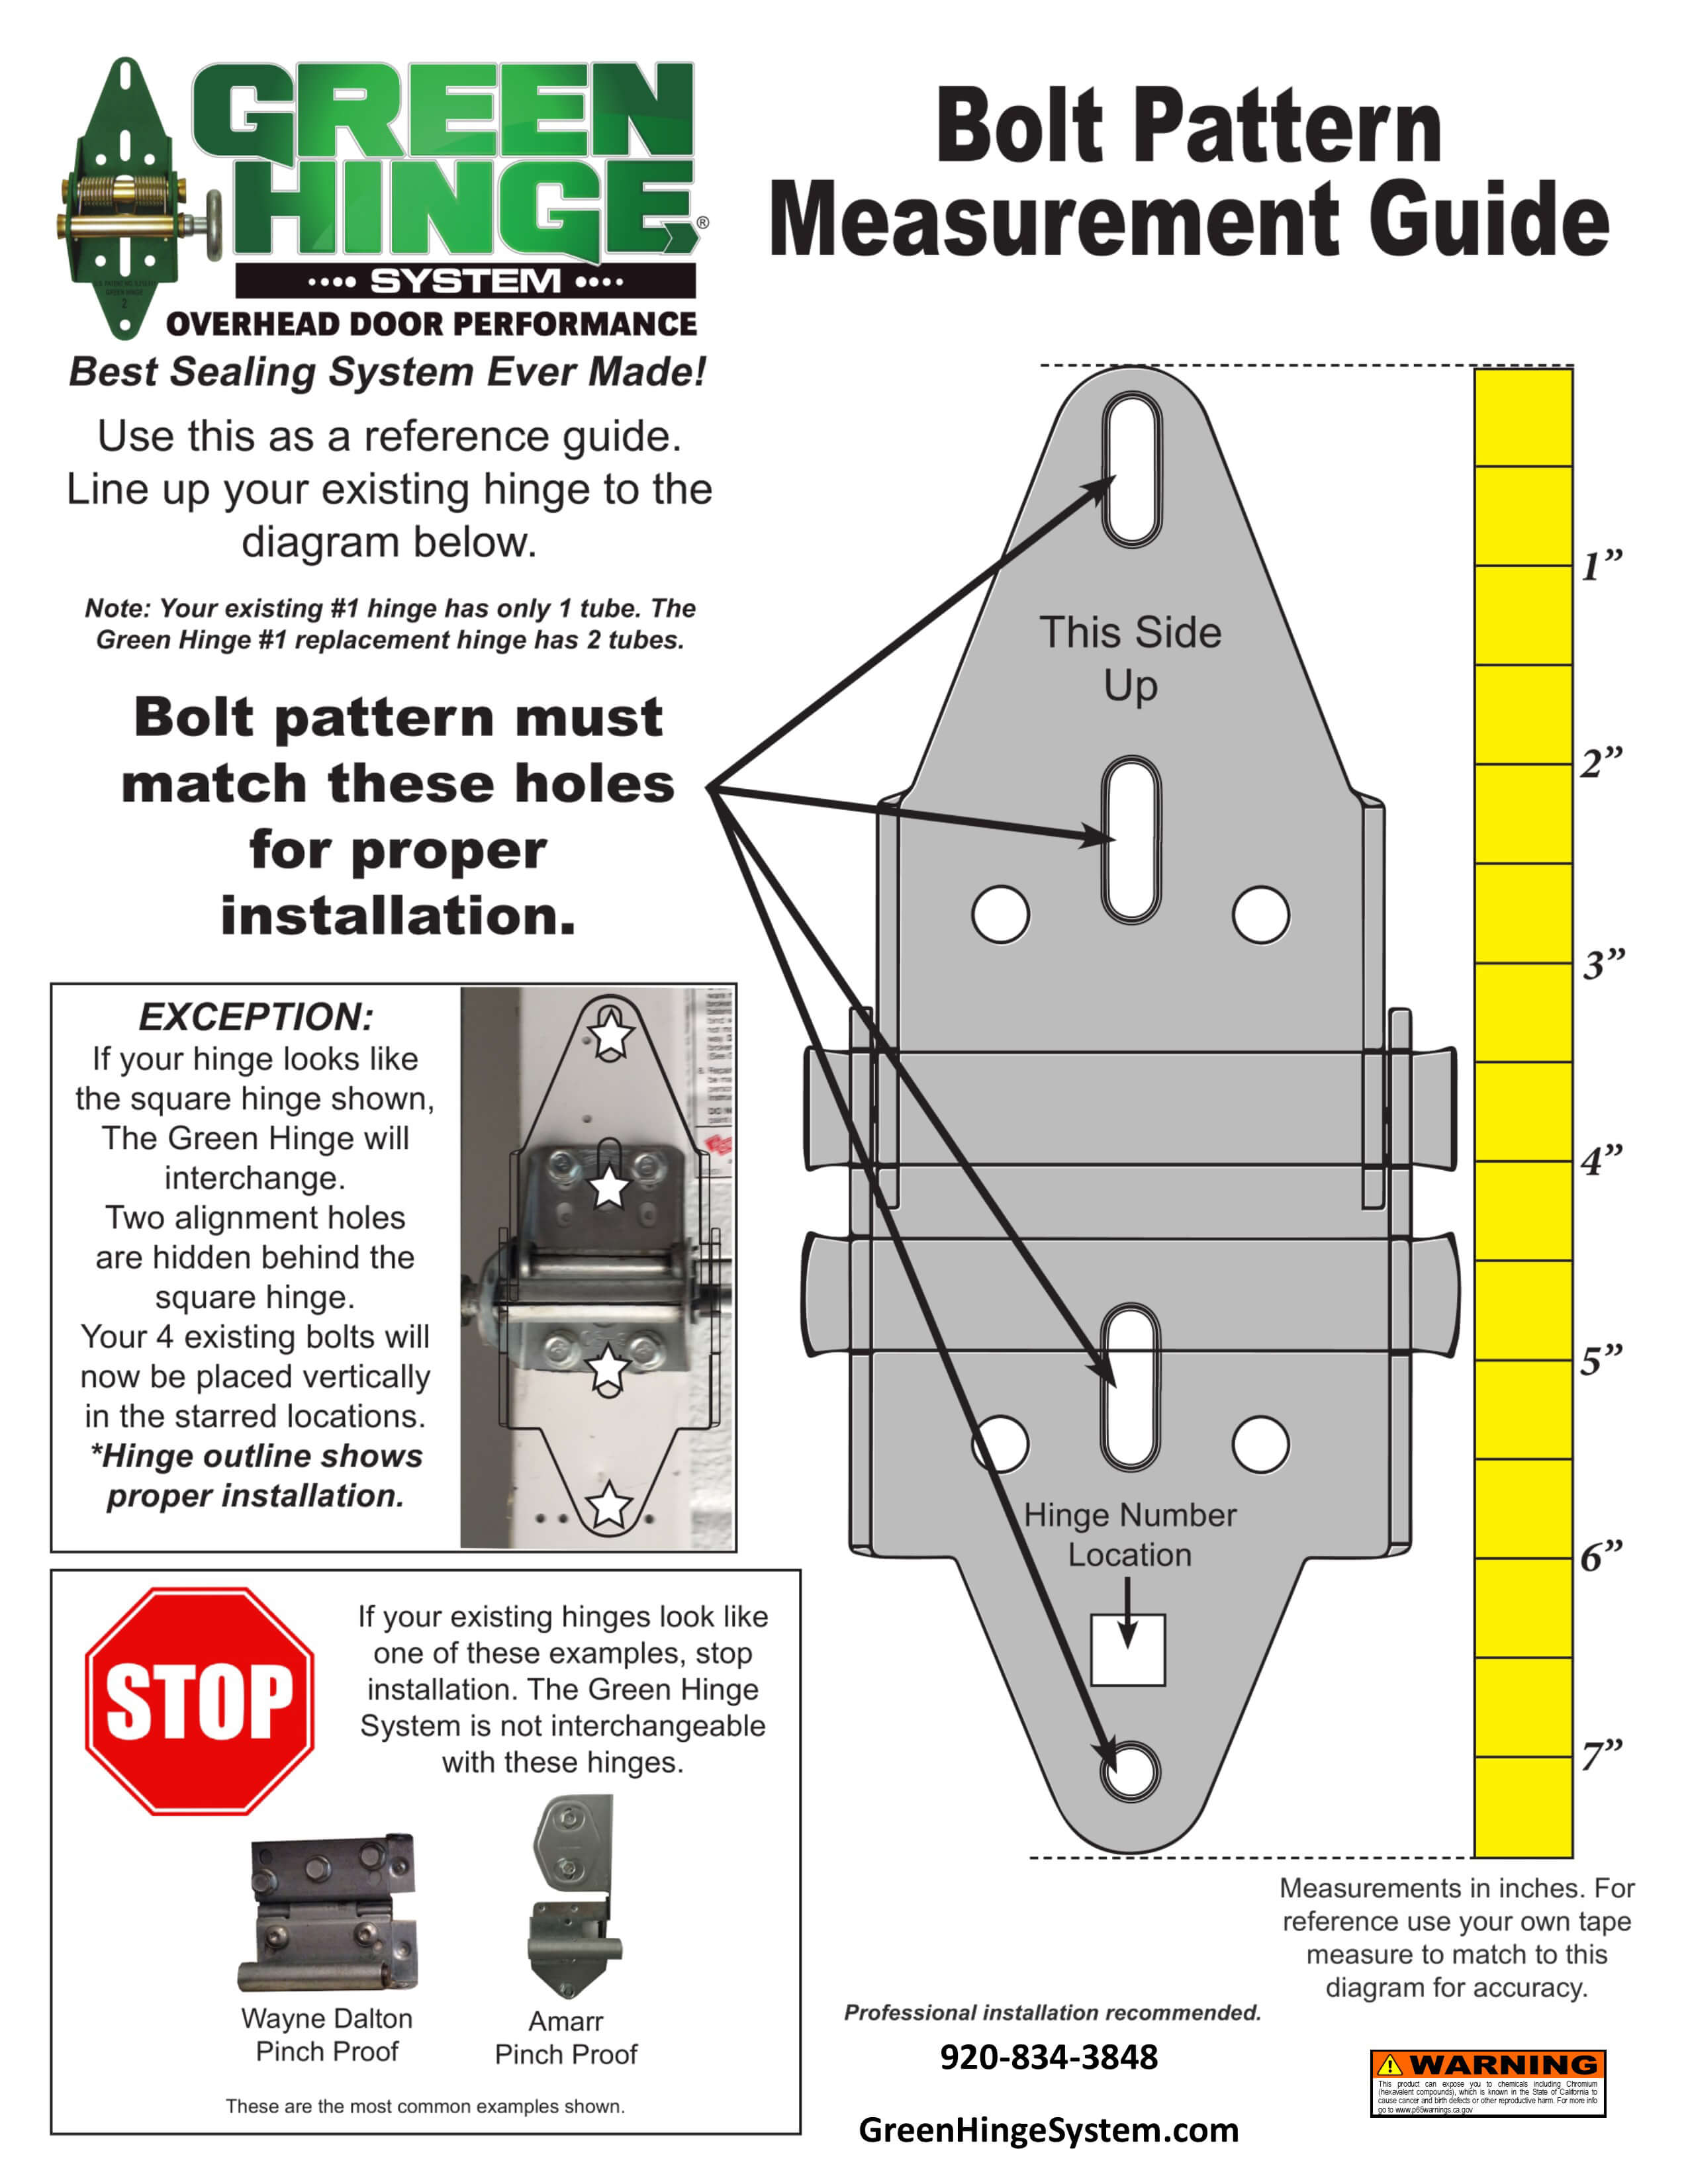 Bolt pattern measurement guide - Green Hinge System